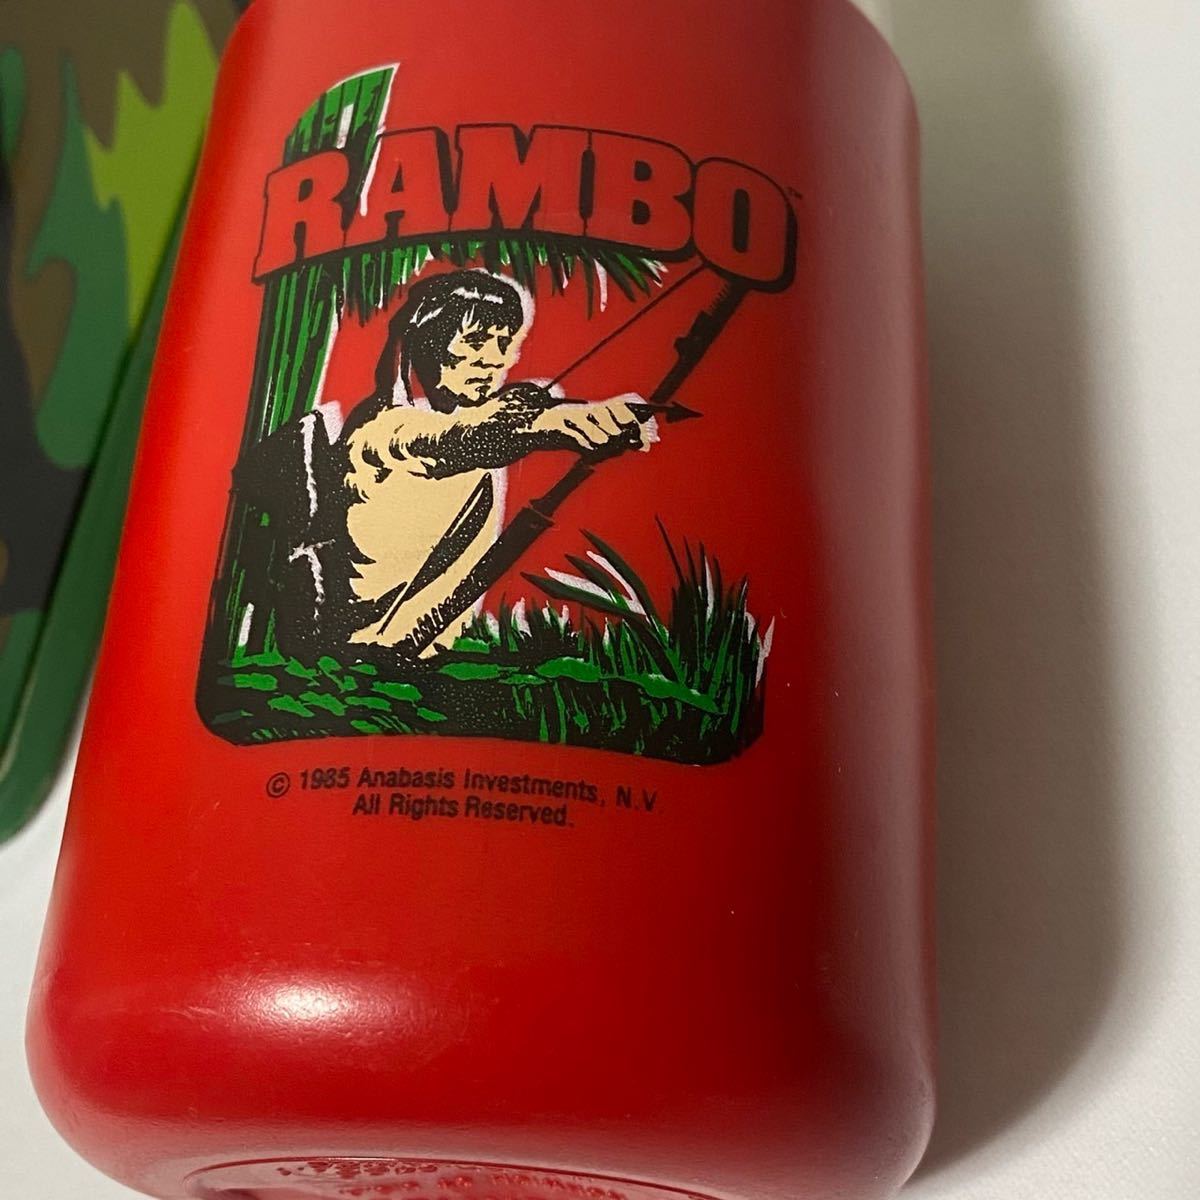 h59 希少 80 年代 RAMBO ランチ ボックス ランボー THERMOS サーモス lunch box ムービー movie カモ 迷彩 ビンテージ VINTAGE 80s